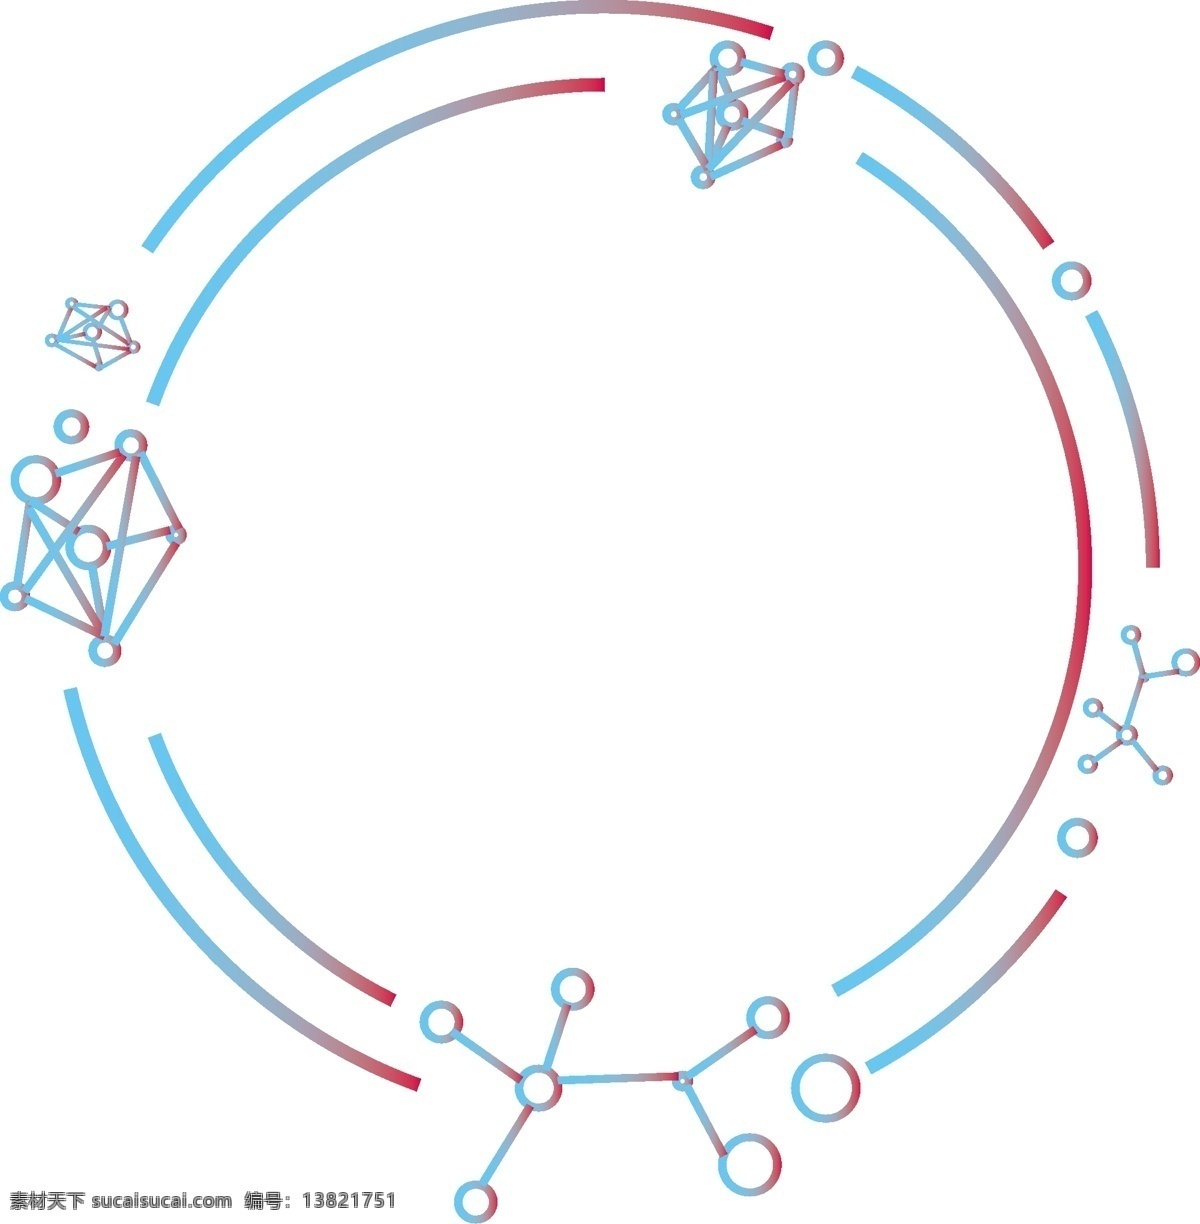 科技 边框 元素 矢量 商用 蓝 红 渐变 圆形 分子 蓝色 红色